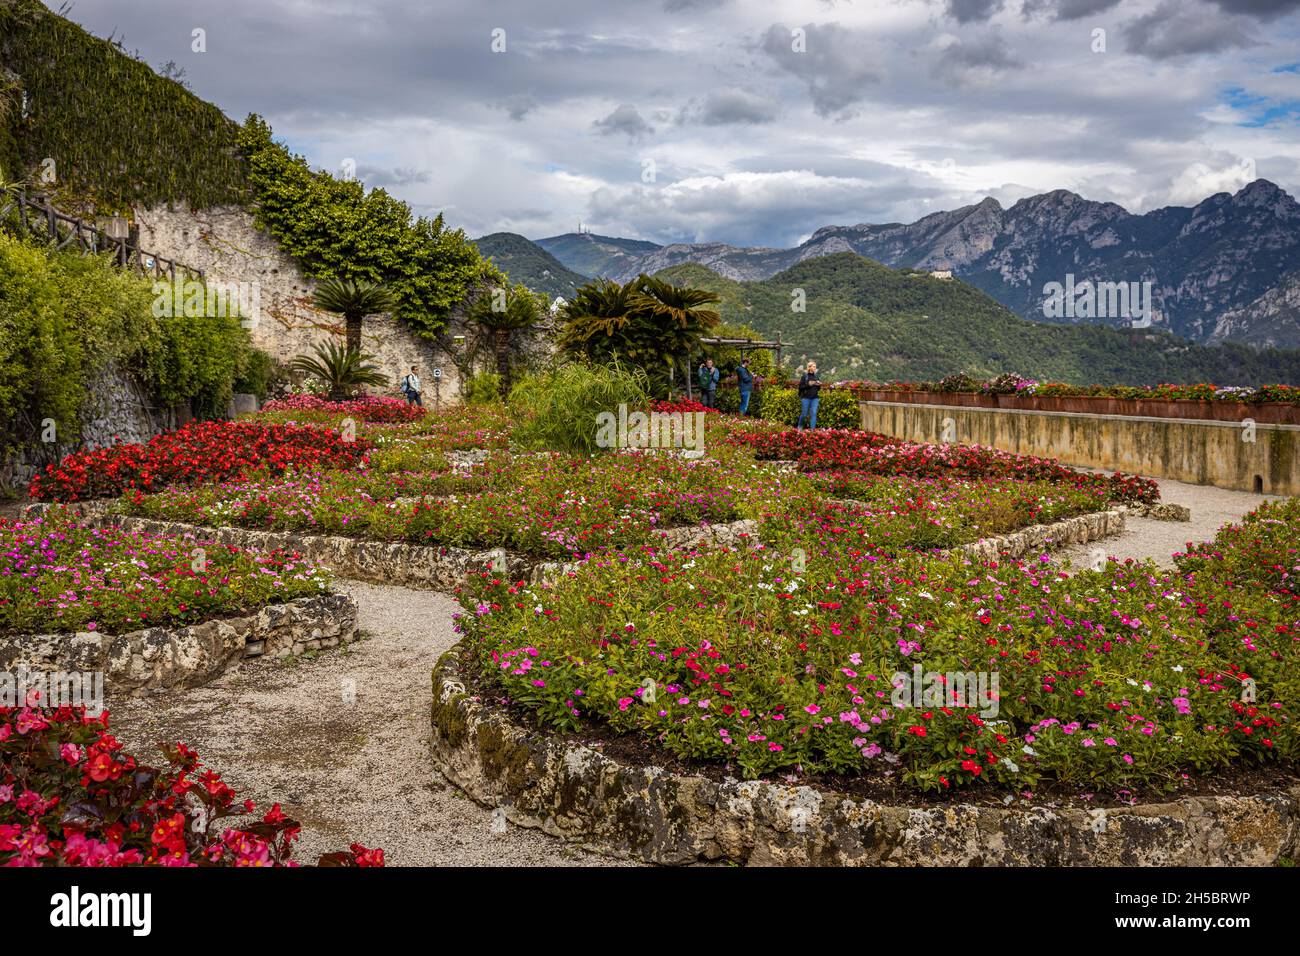 Villa Rufolo Gardens, Ravello, Italy Stock Photo